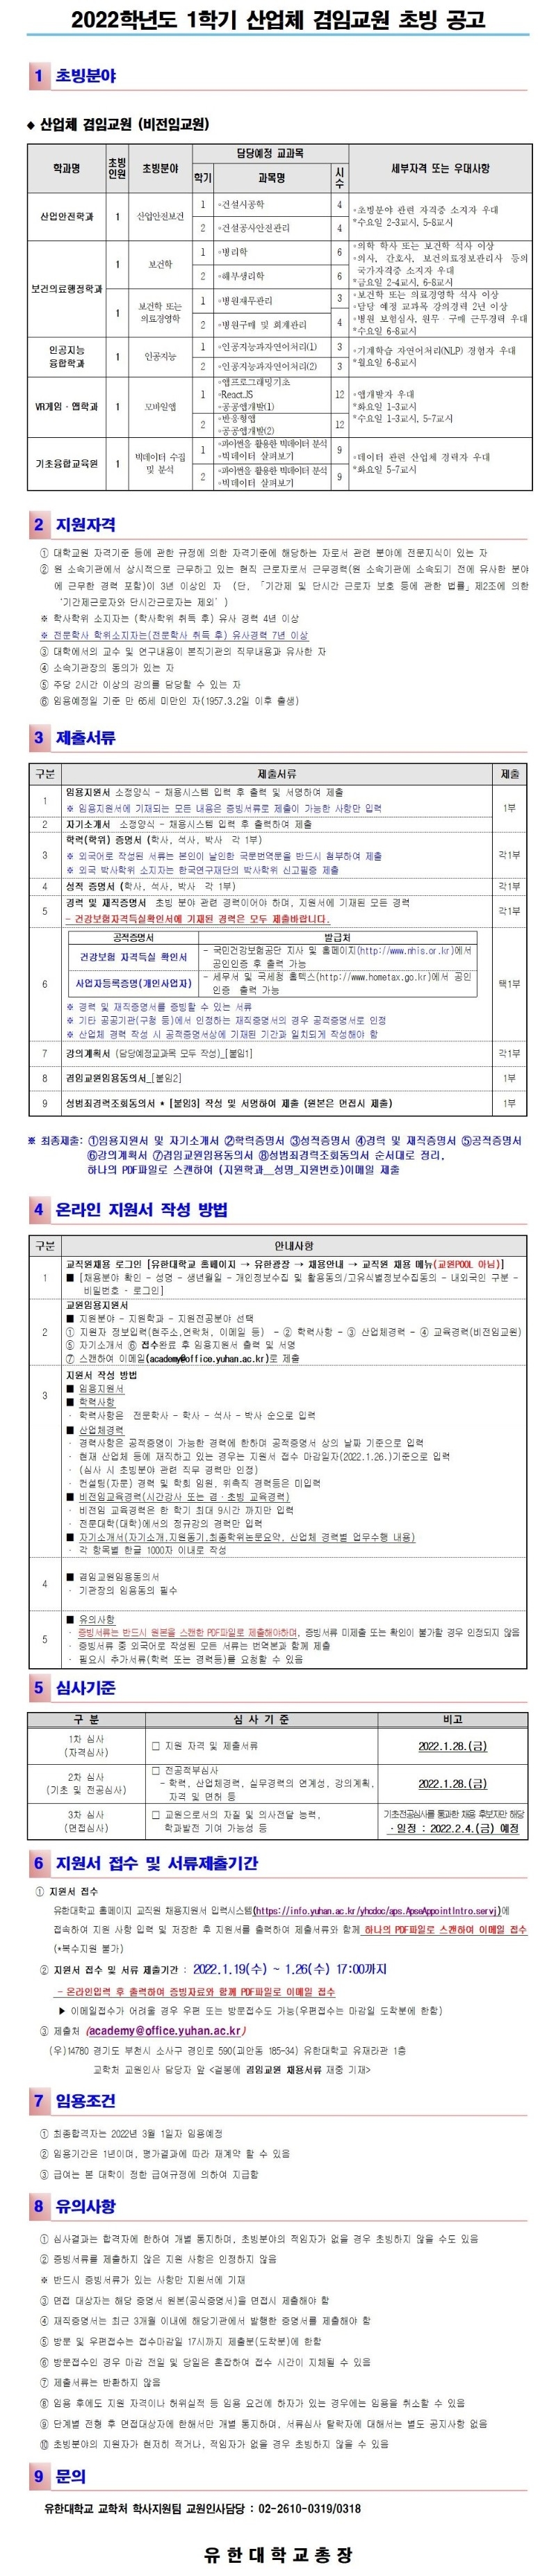 2022-1학기 겸임교원 초빙 공고문(취합본).jpg